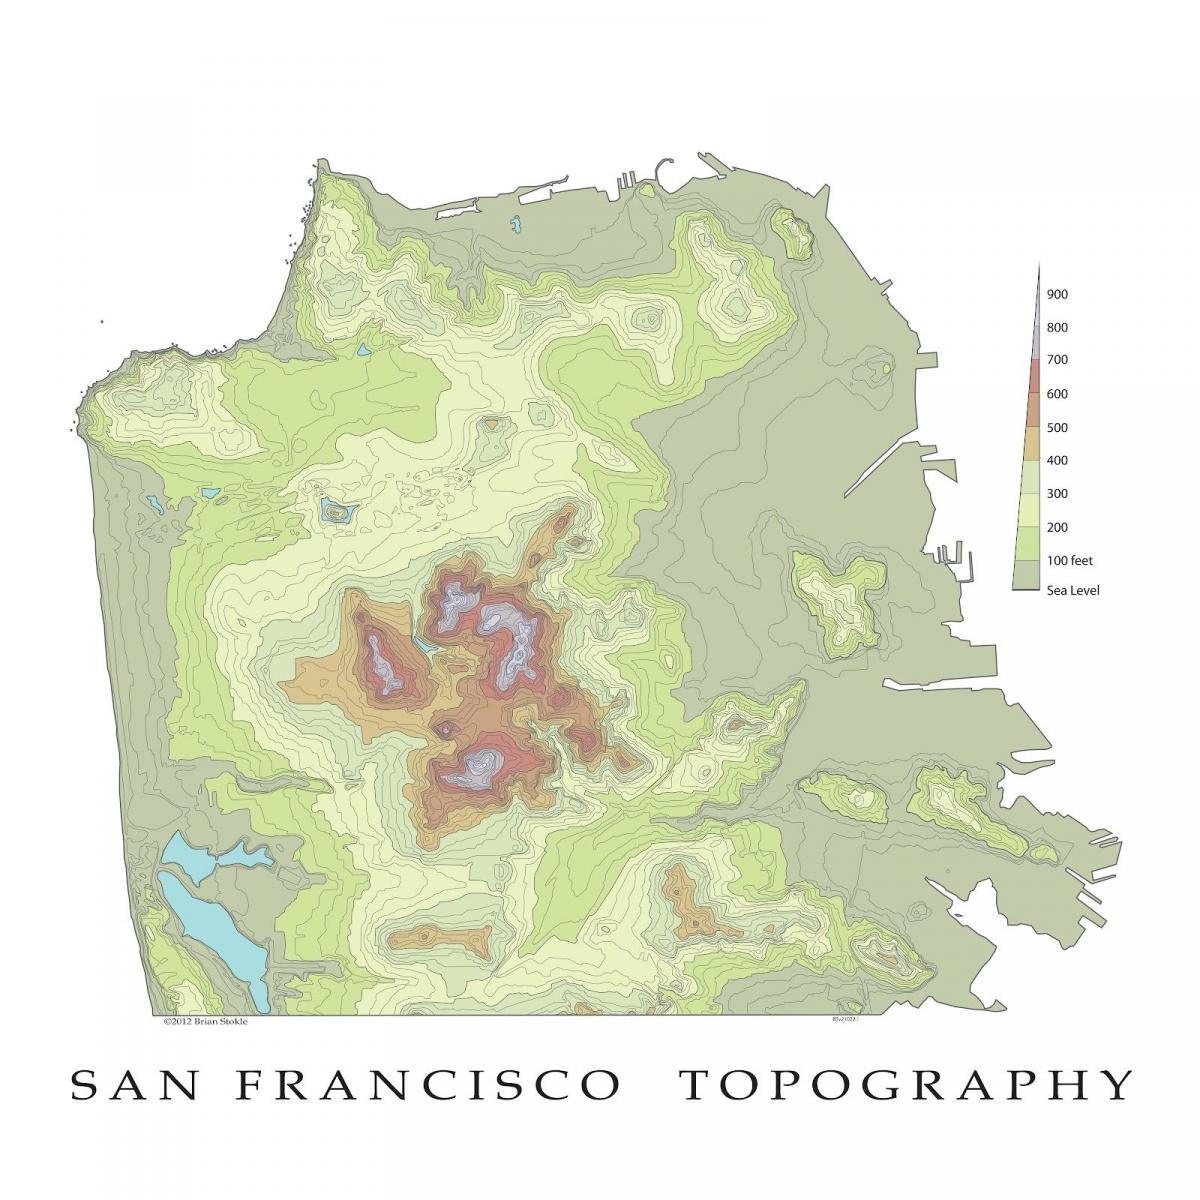 El mapa topográfico de San Francisco